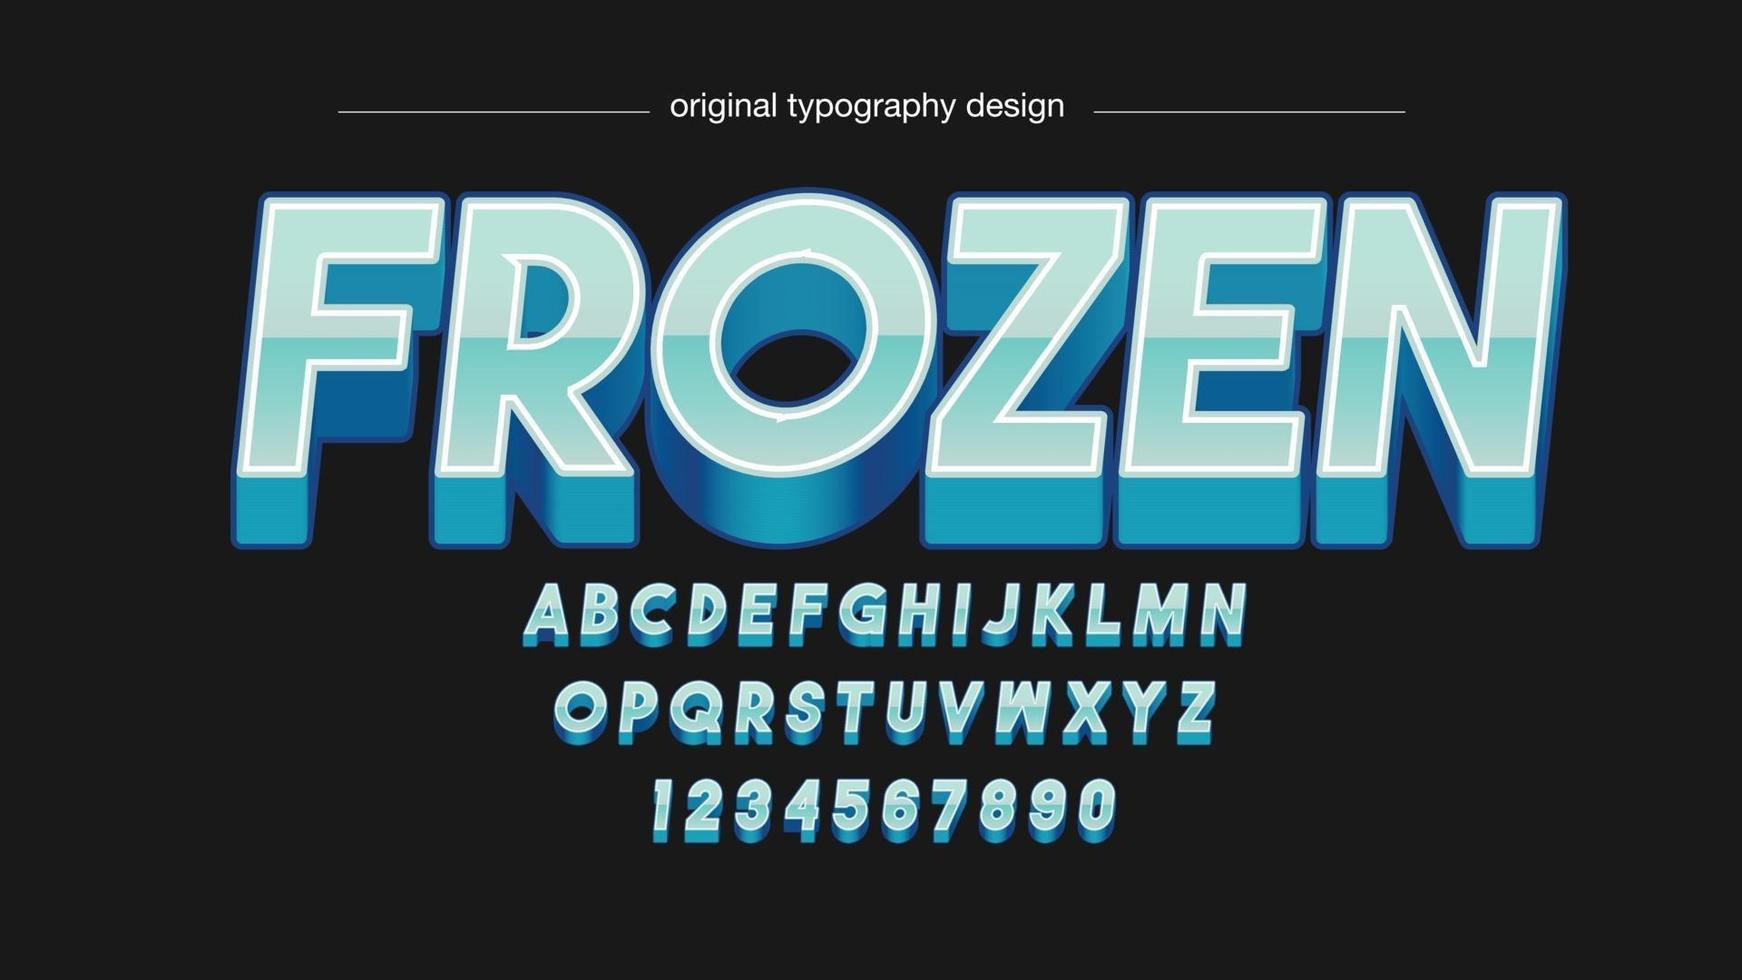 typographie métallique moderne 3d bleue vecteur